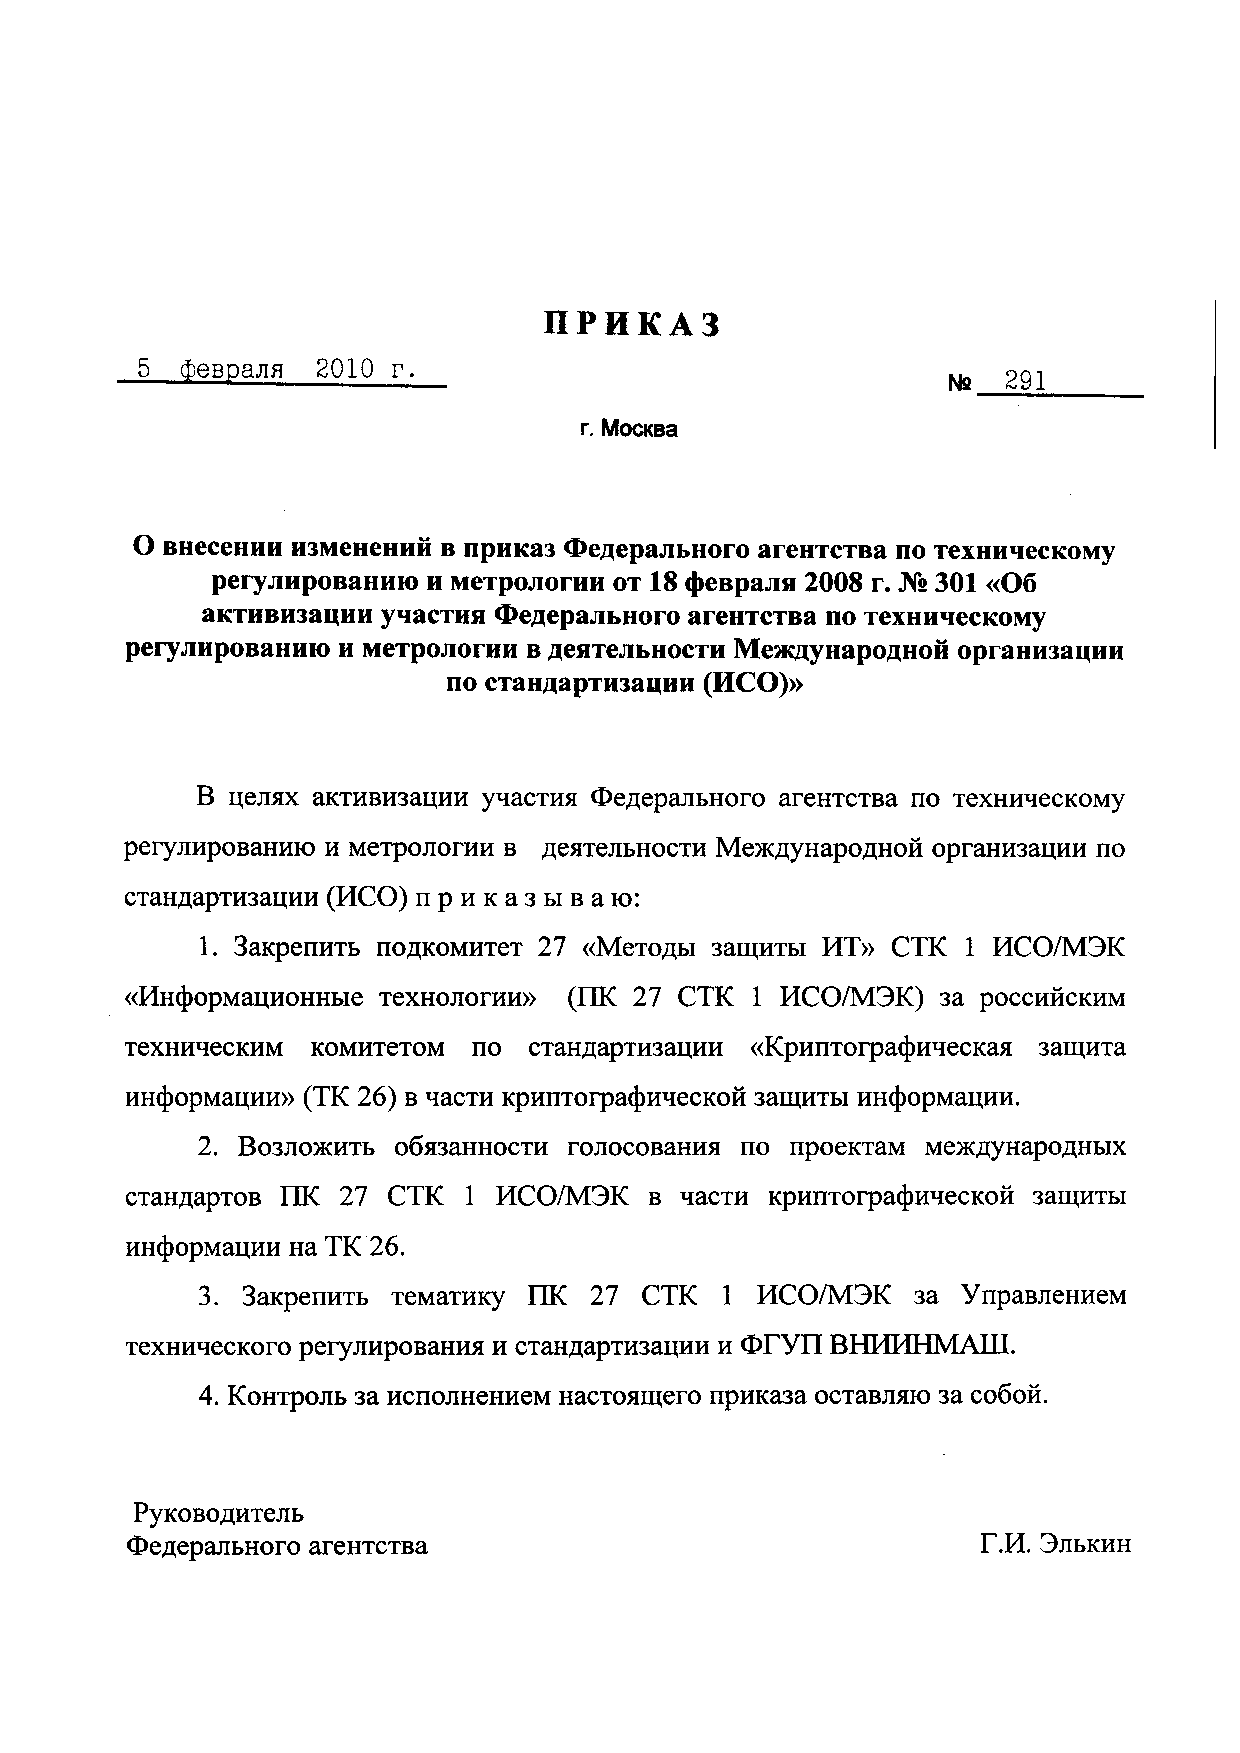 Приказ Ростехрегулирования о внесении изменений в приказ от 18.02.2008 № 301